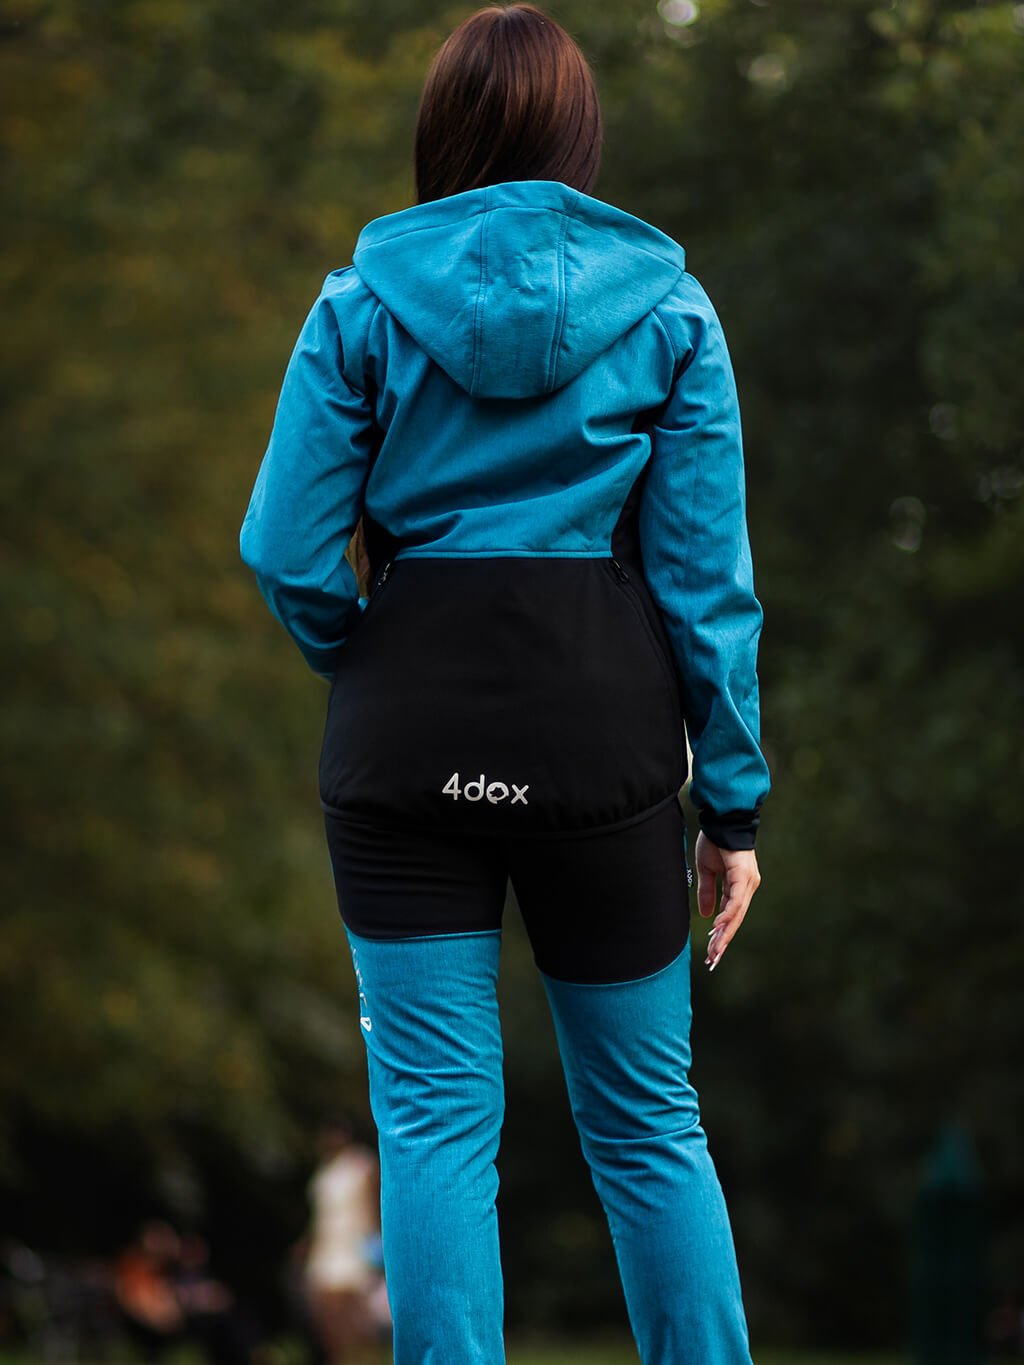 Ladies training jacket petrol-black 4dox